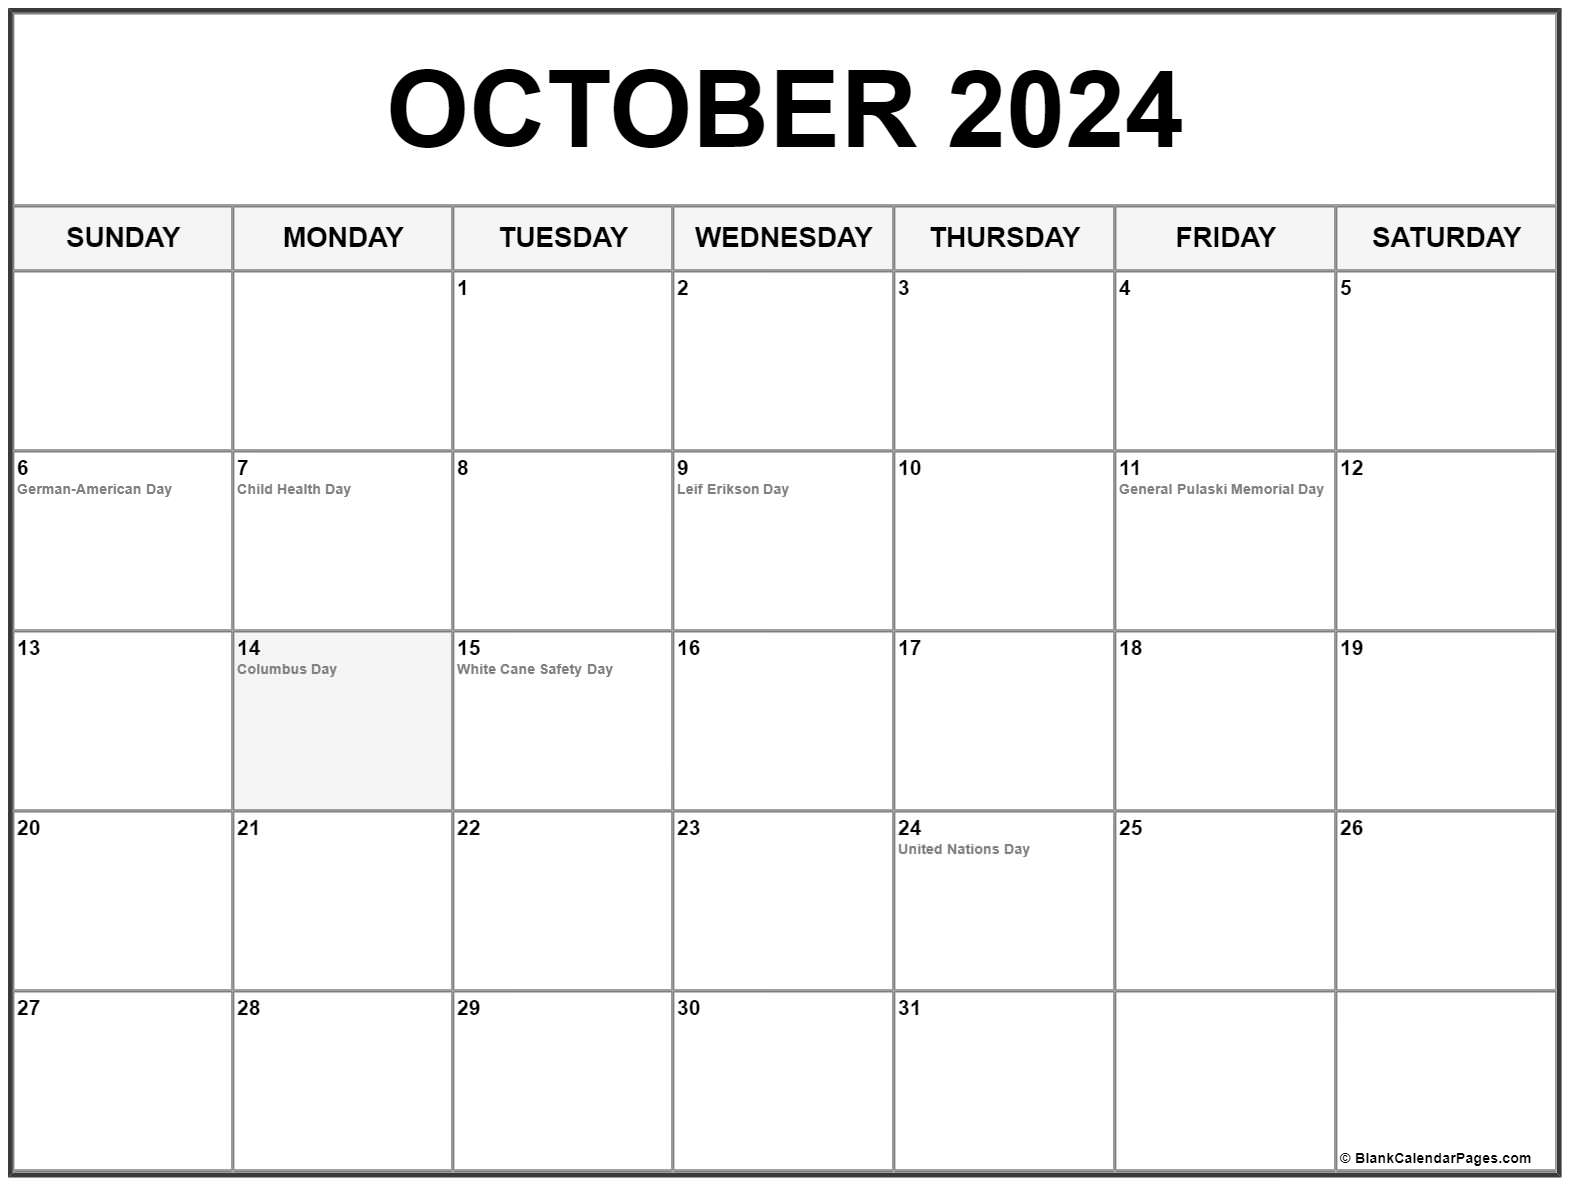 October 2022 Calendar Columbus Day October 2022 With Holidays Calendar